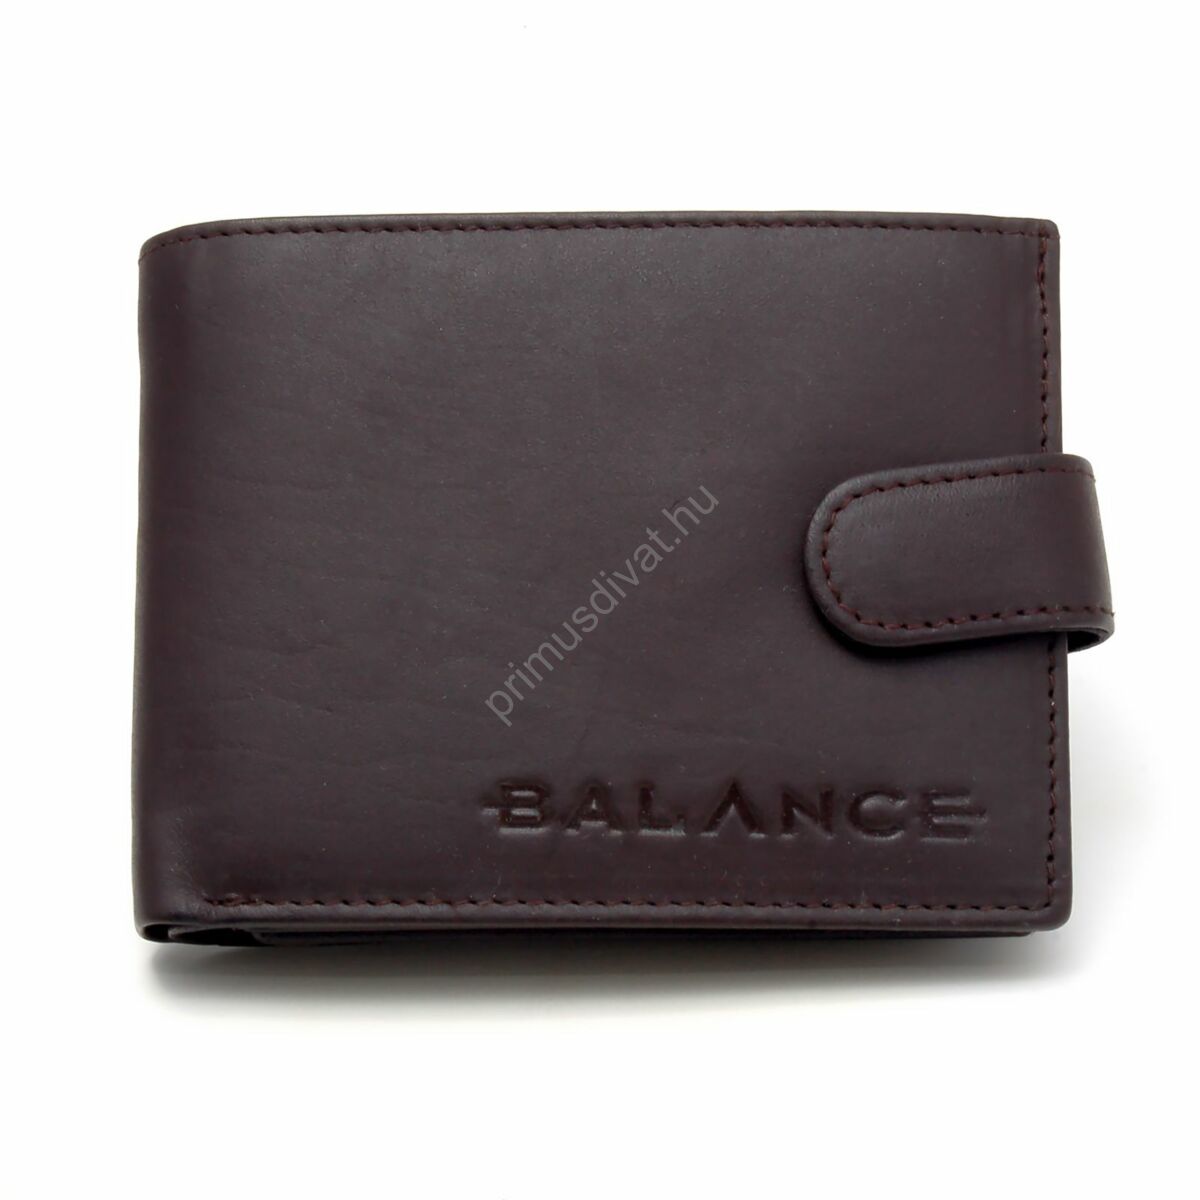 Balance sötétbarna bőr pénztárca apró pénz és kártya tartóval